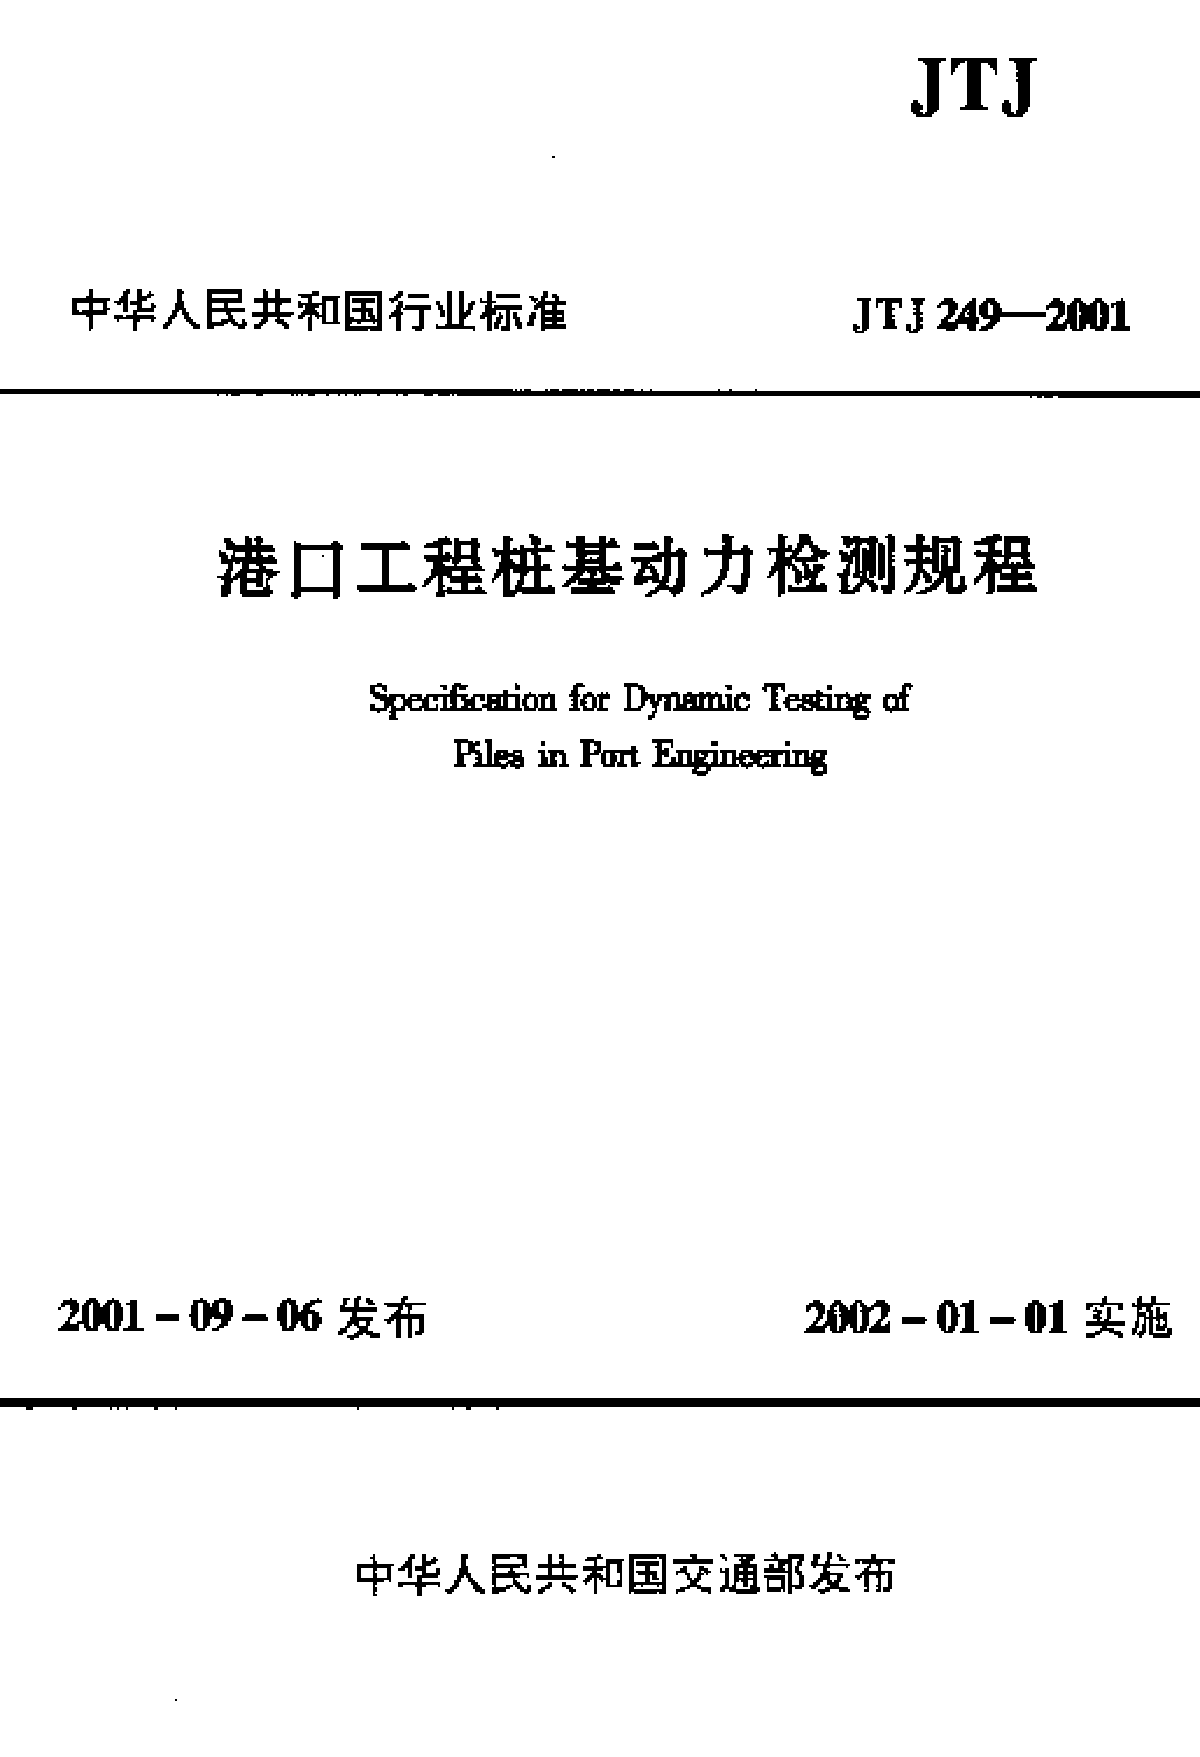 《港口工程桩基动力检测规程》(JTJ 249-2001) 